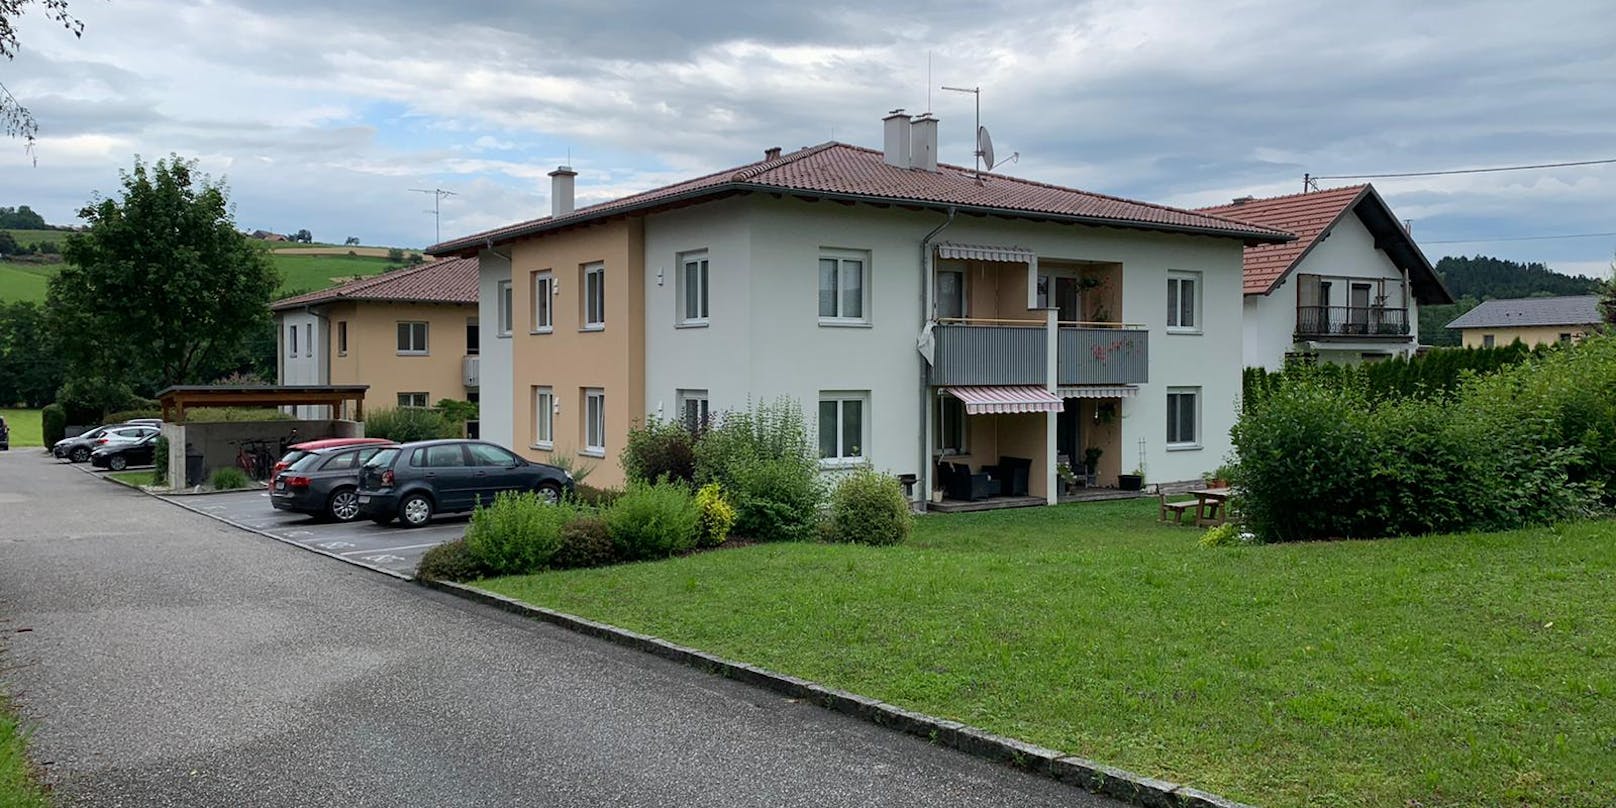 In diesem Haus in Rainbach am Innkreis soll am 17. Juli 2020 ein Familienvater versucht haben, seine Frau und die beiden Kinder zu töten.